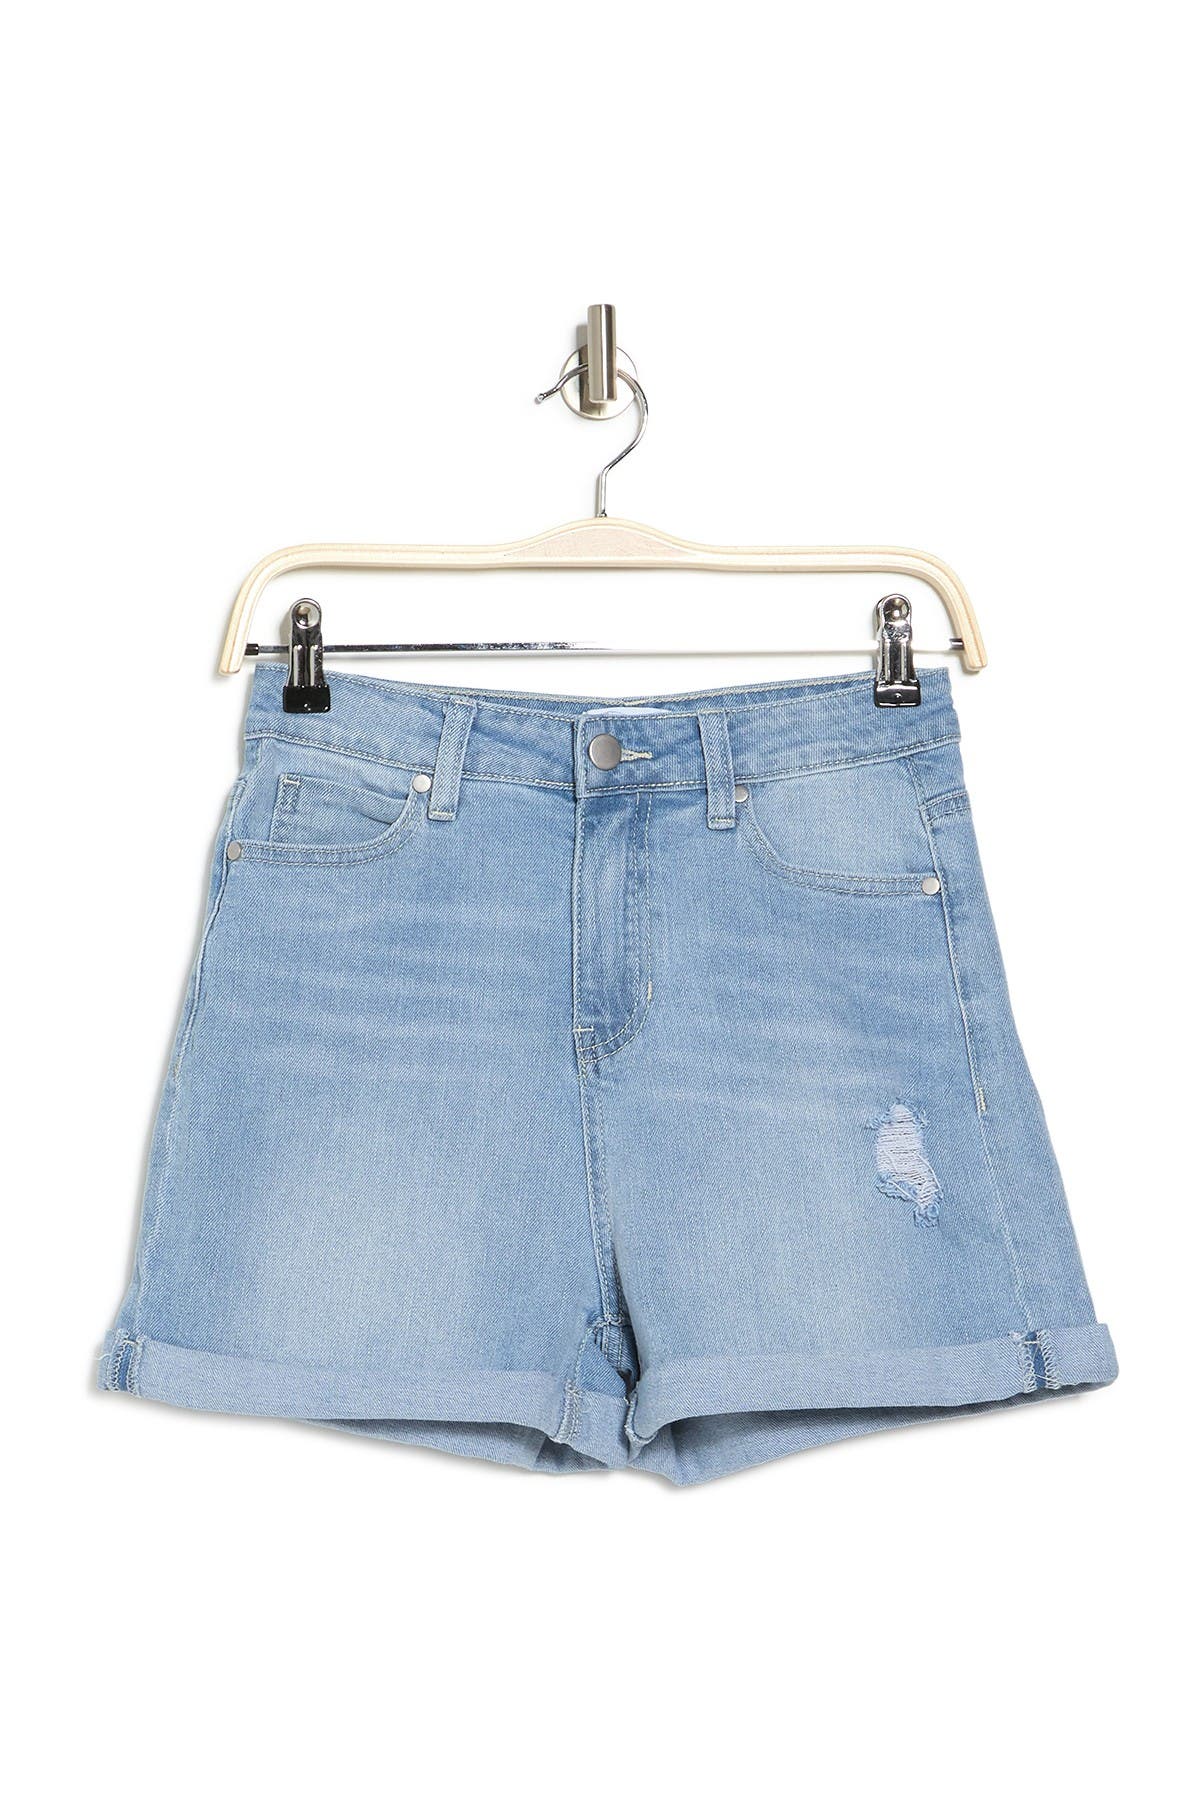 Abound Denim Rolled Hem Sustainable Denim Shorts In Blue Light Wash